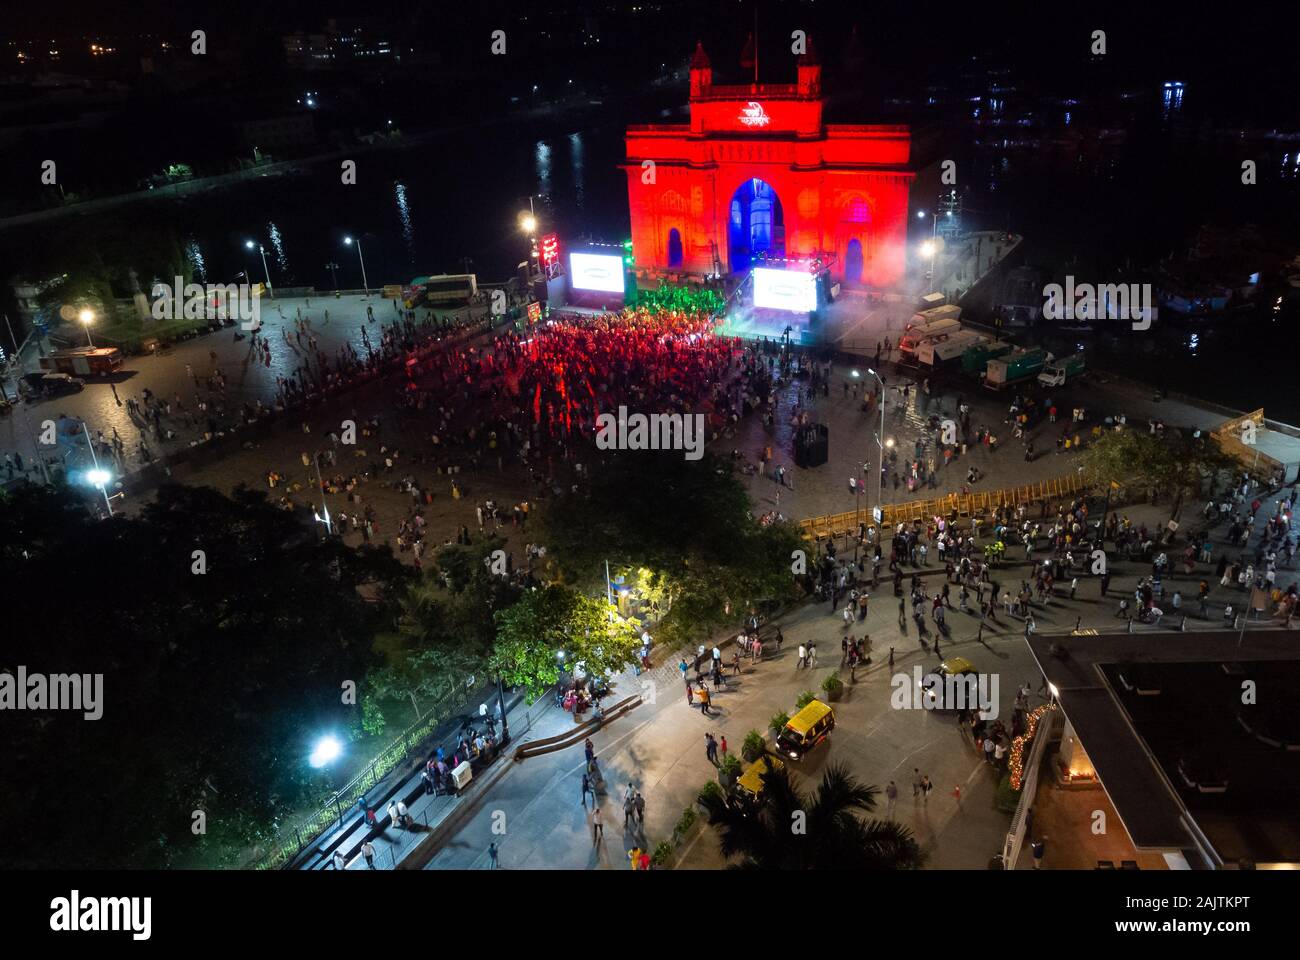 Illuminated indian gate for new year eve with crowd of people, mumbai, maharashtra, south india Stock Photo